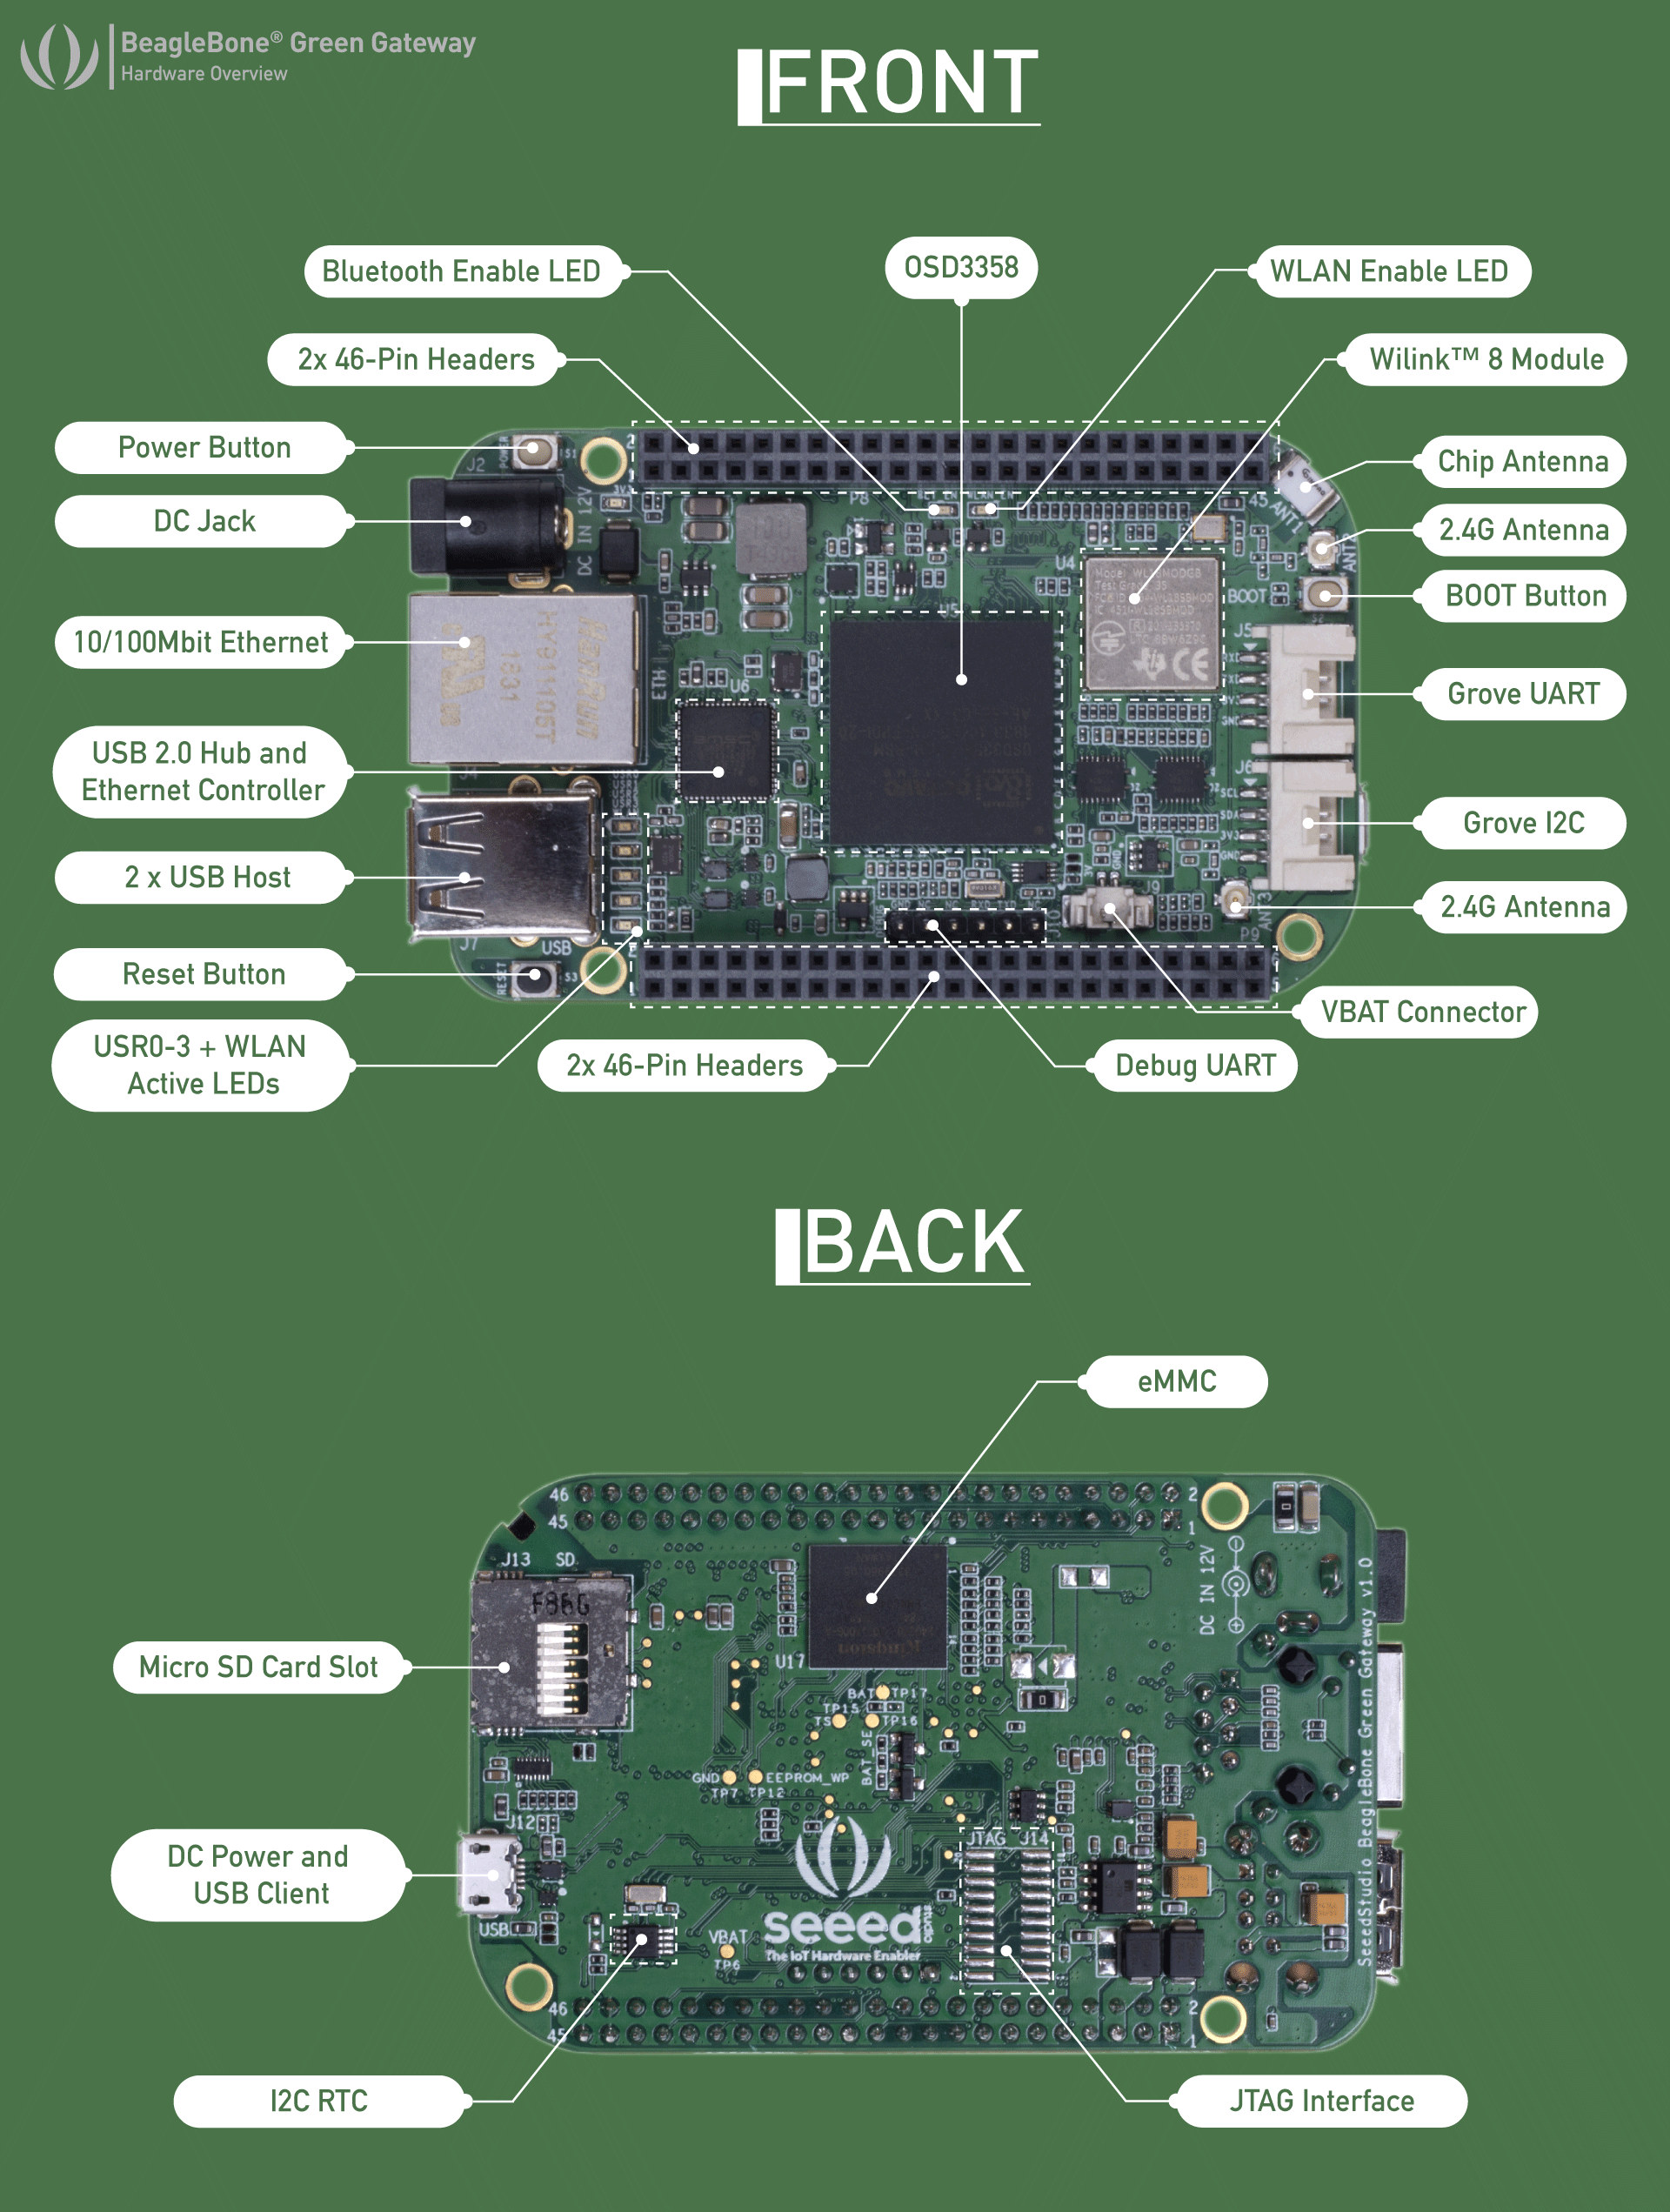 BeagleBone-Green-Gateway-Specifications.jpg